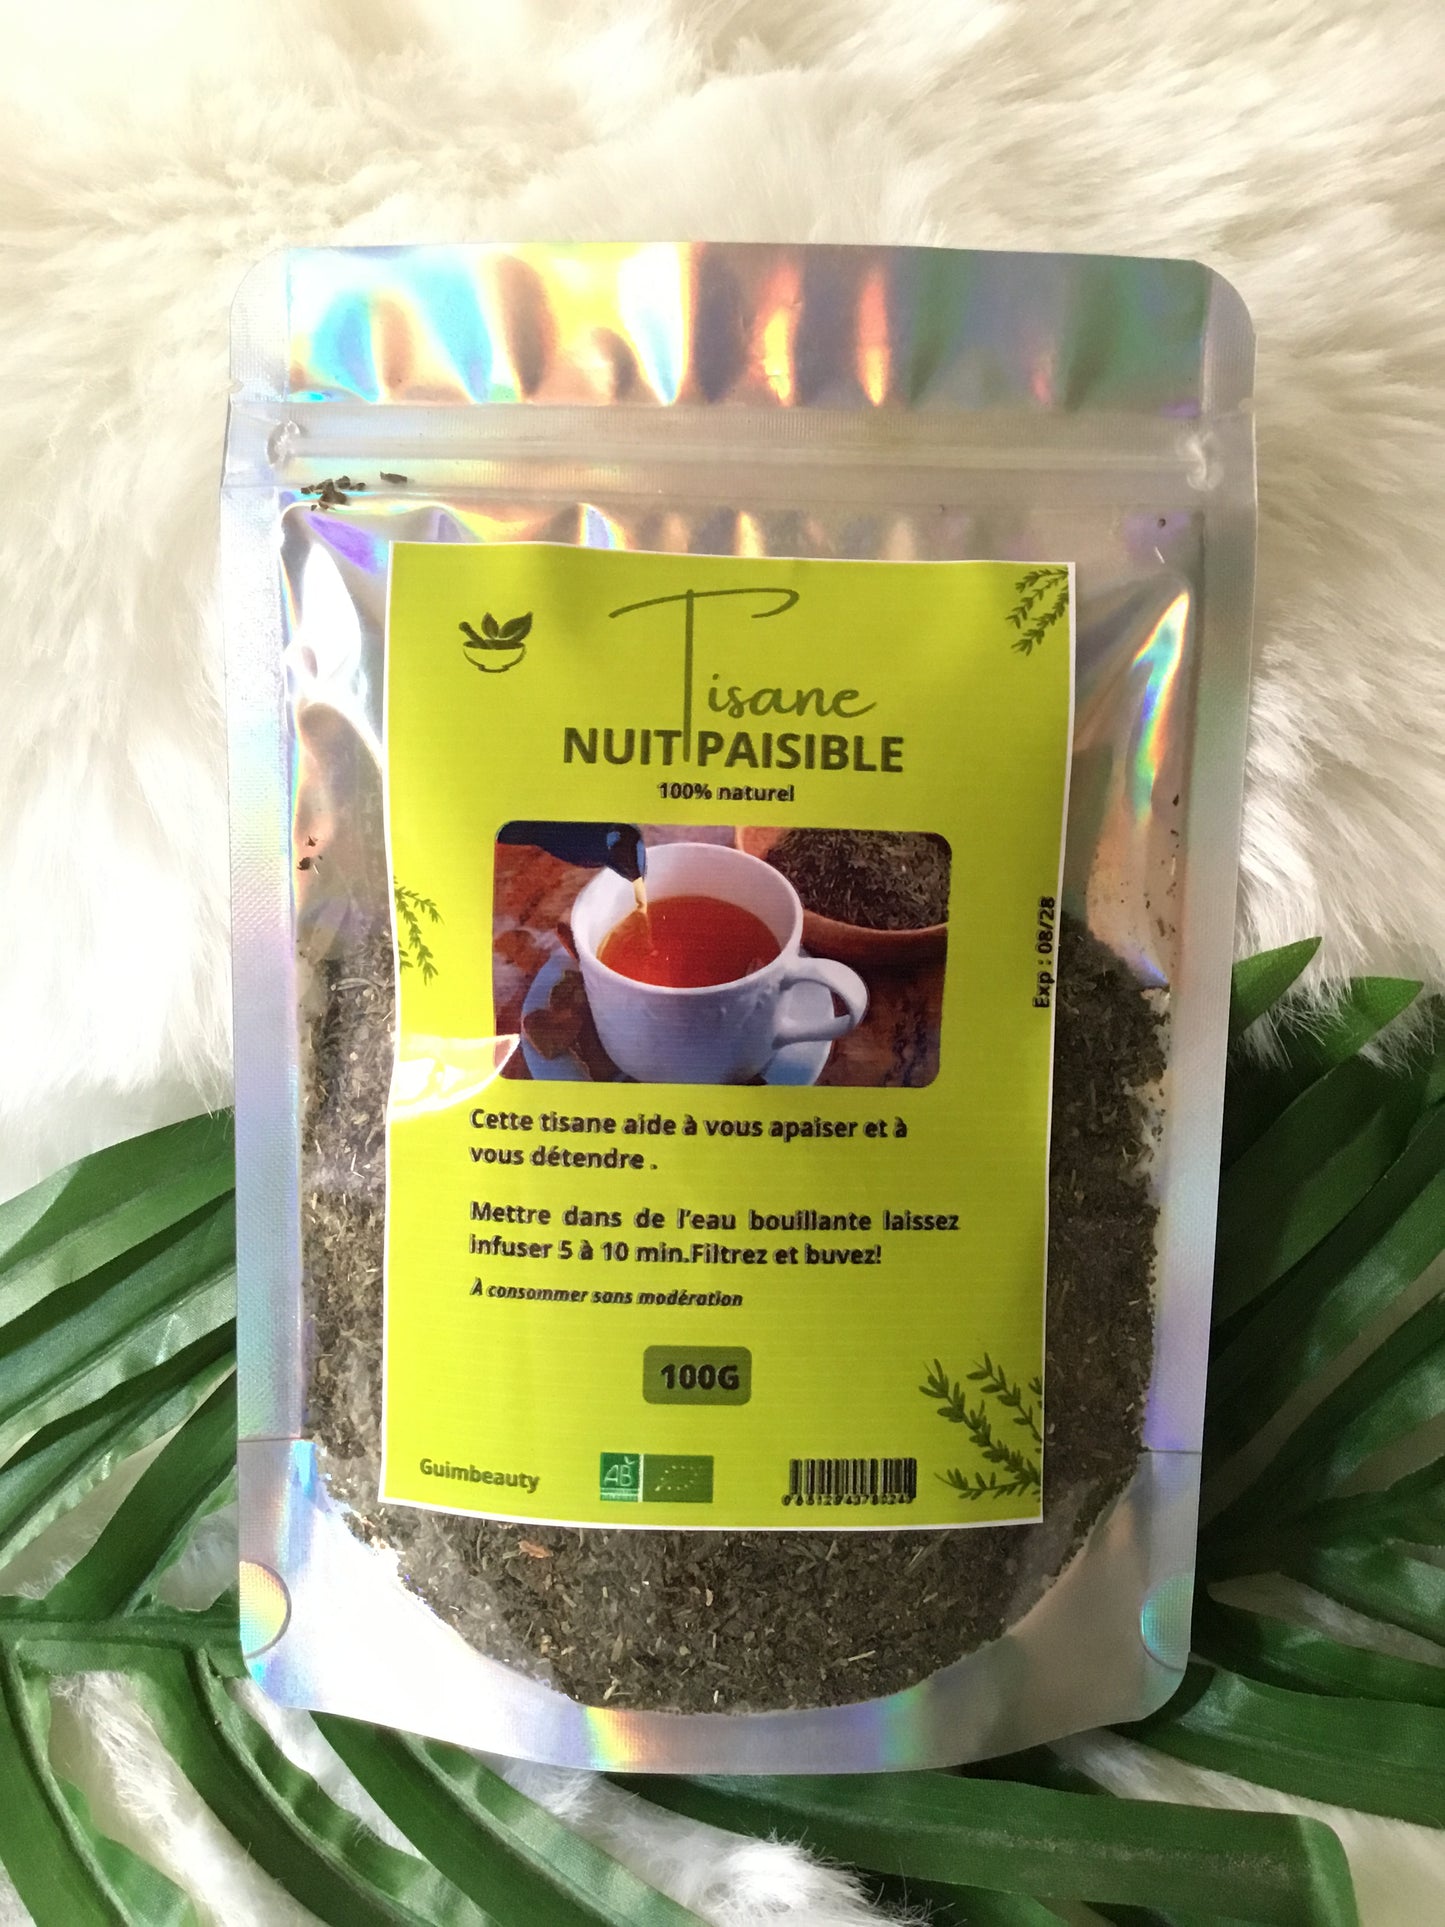 Peaceful Night Sleep Herbal Tea - Blend of relaxing plants - 100 grams